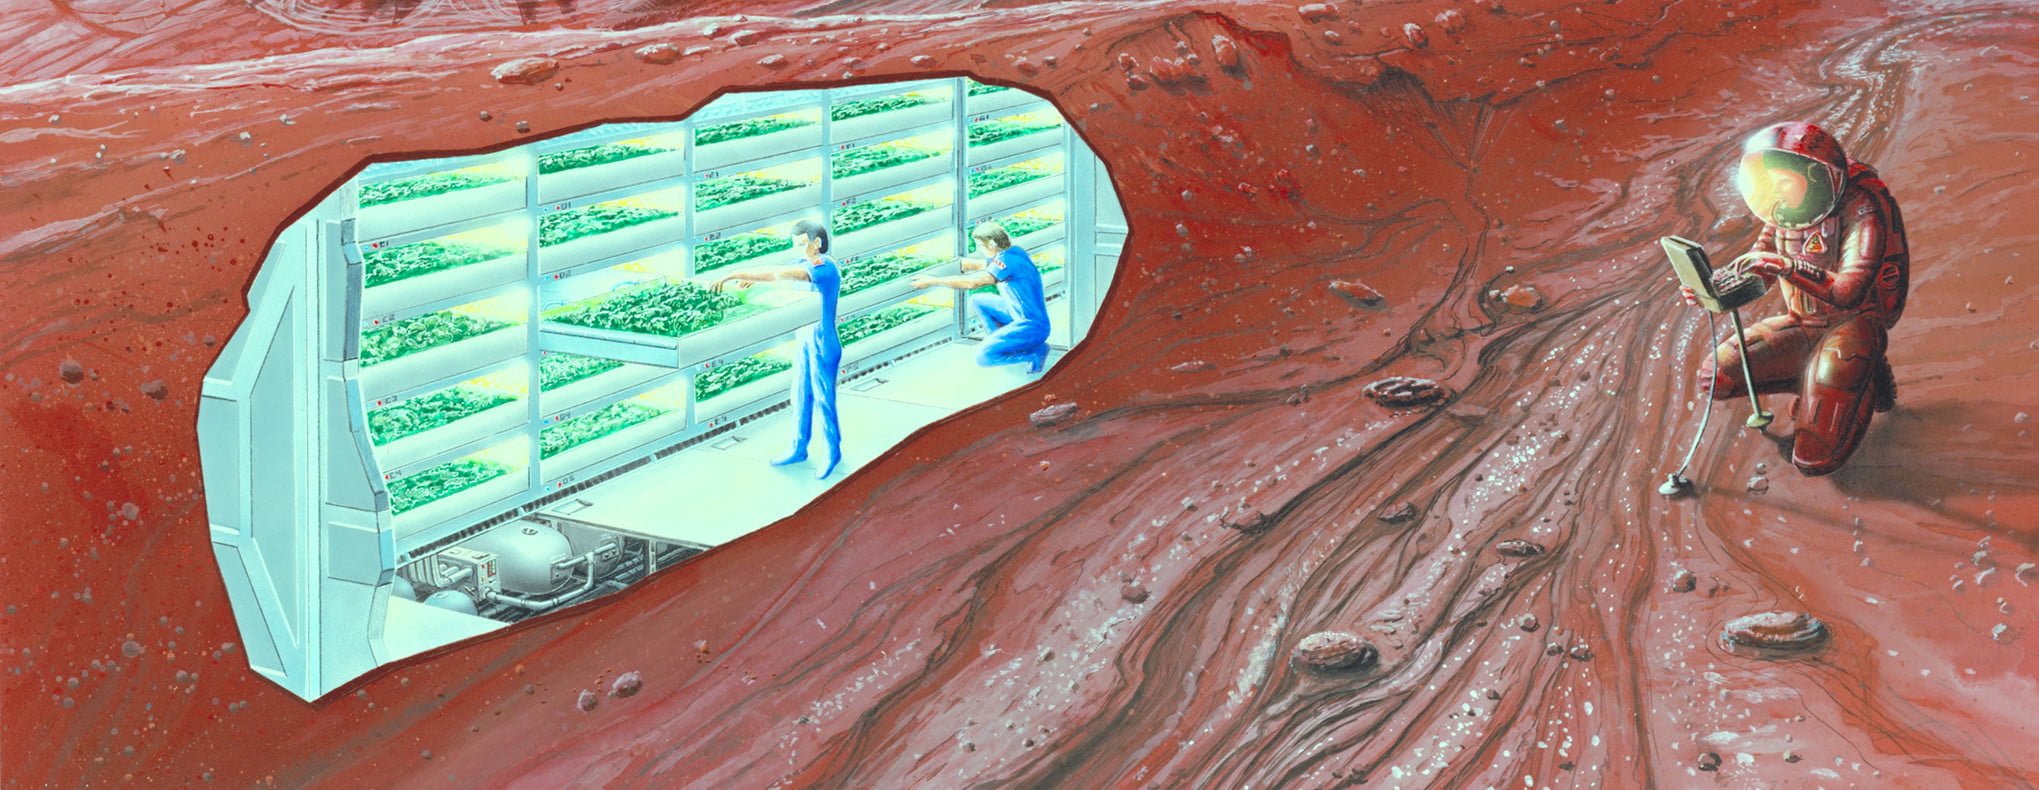 Concept Mars colony e1430939981884 كيف يمكن للزراعة على المريخ أن تساعد على تحسين الزراعة على الأرض مجلة نقطة العلمية